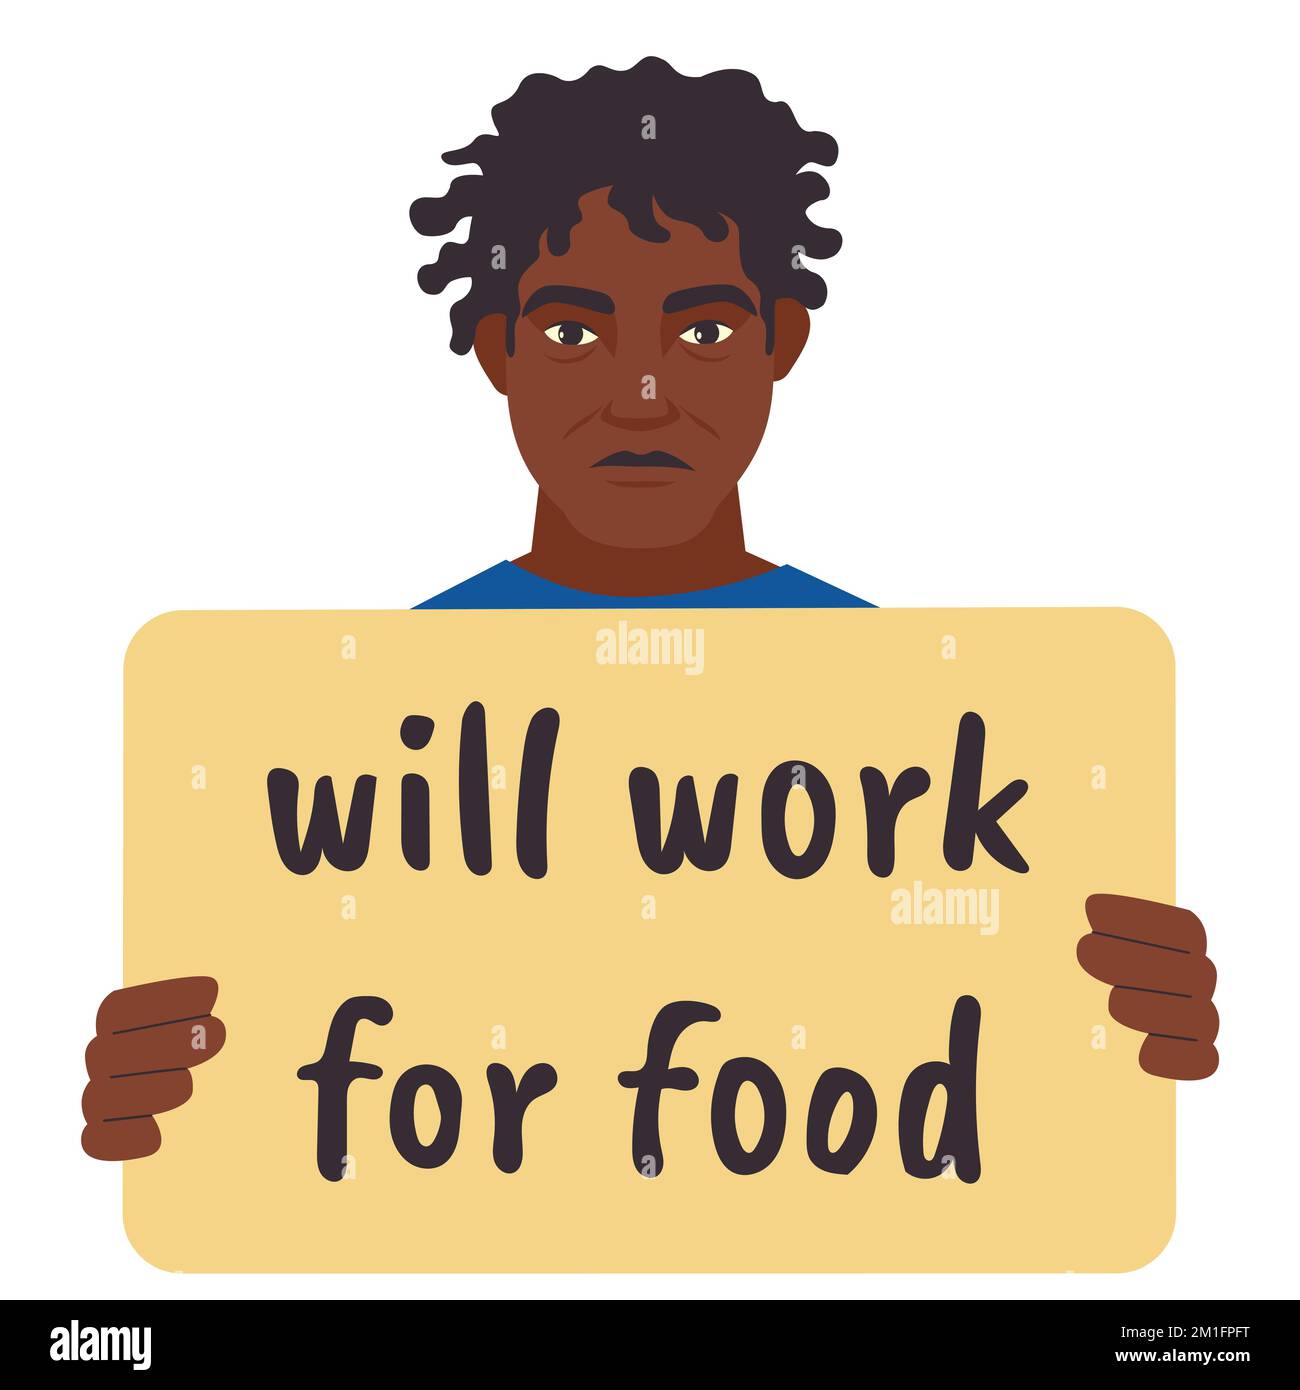 Ein Obdachloser hat ein Plakat. Wird für Lebensmittel-Banner funktionieren. Beschäftigungs- und Nahrungsmittelkrisenkonzept. Ein Typ in einer schwierigen Lebenssituation bittet um Hilfe. Vektordarstellung. Stock Vektor